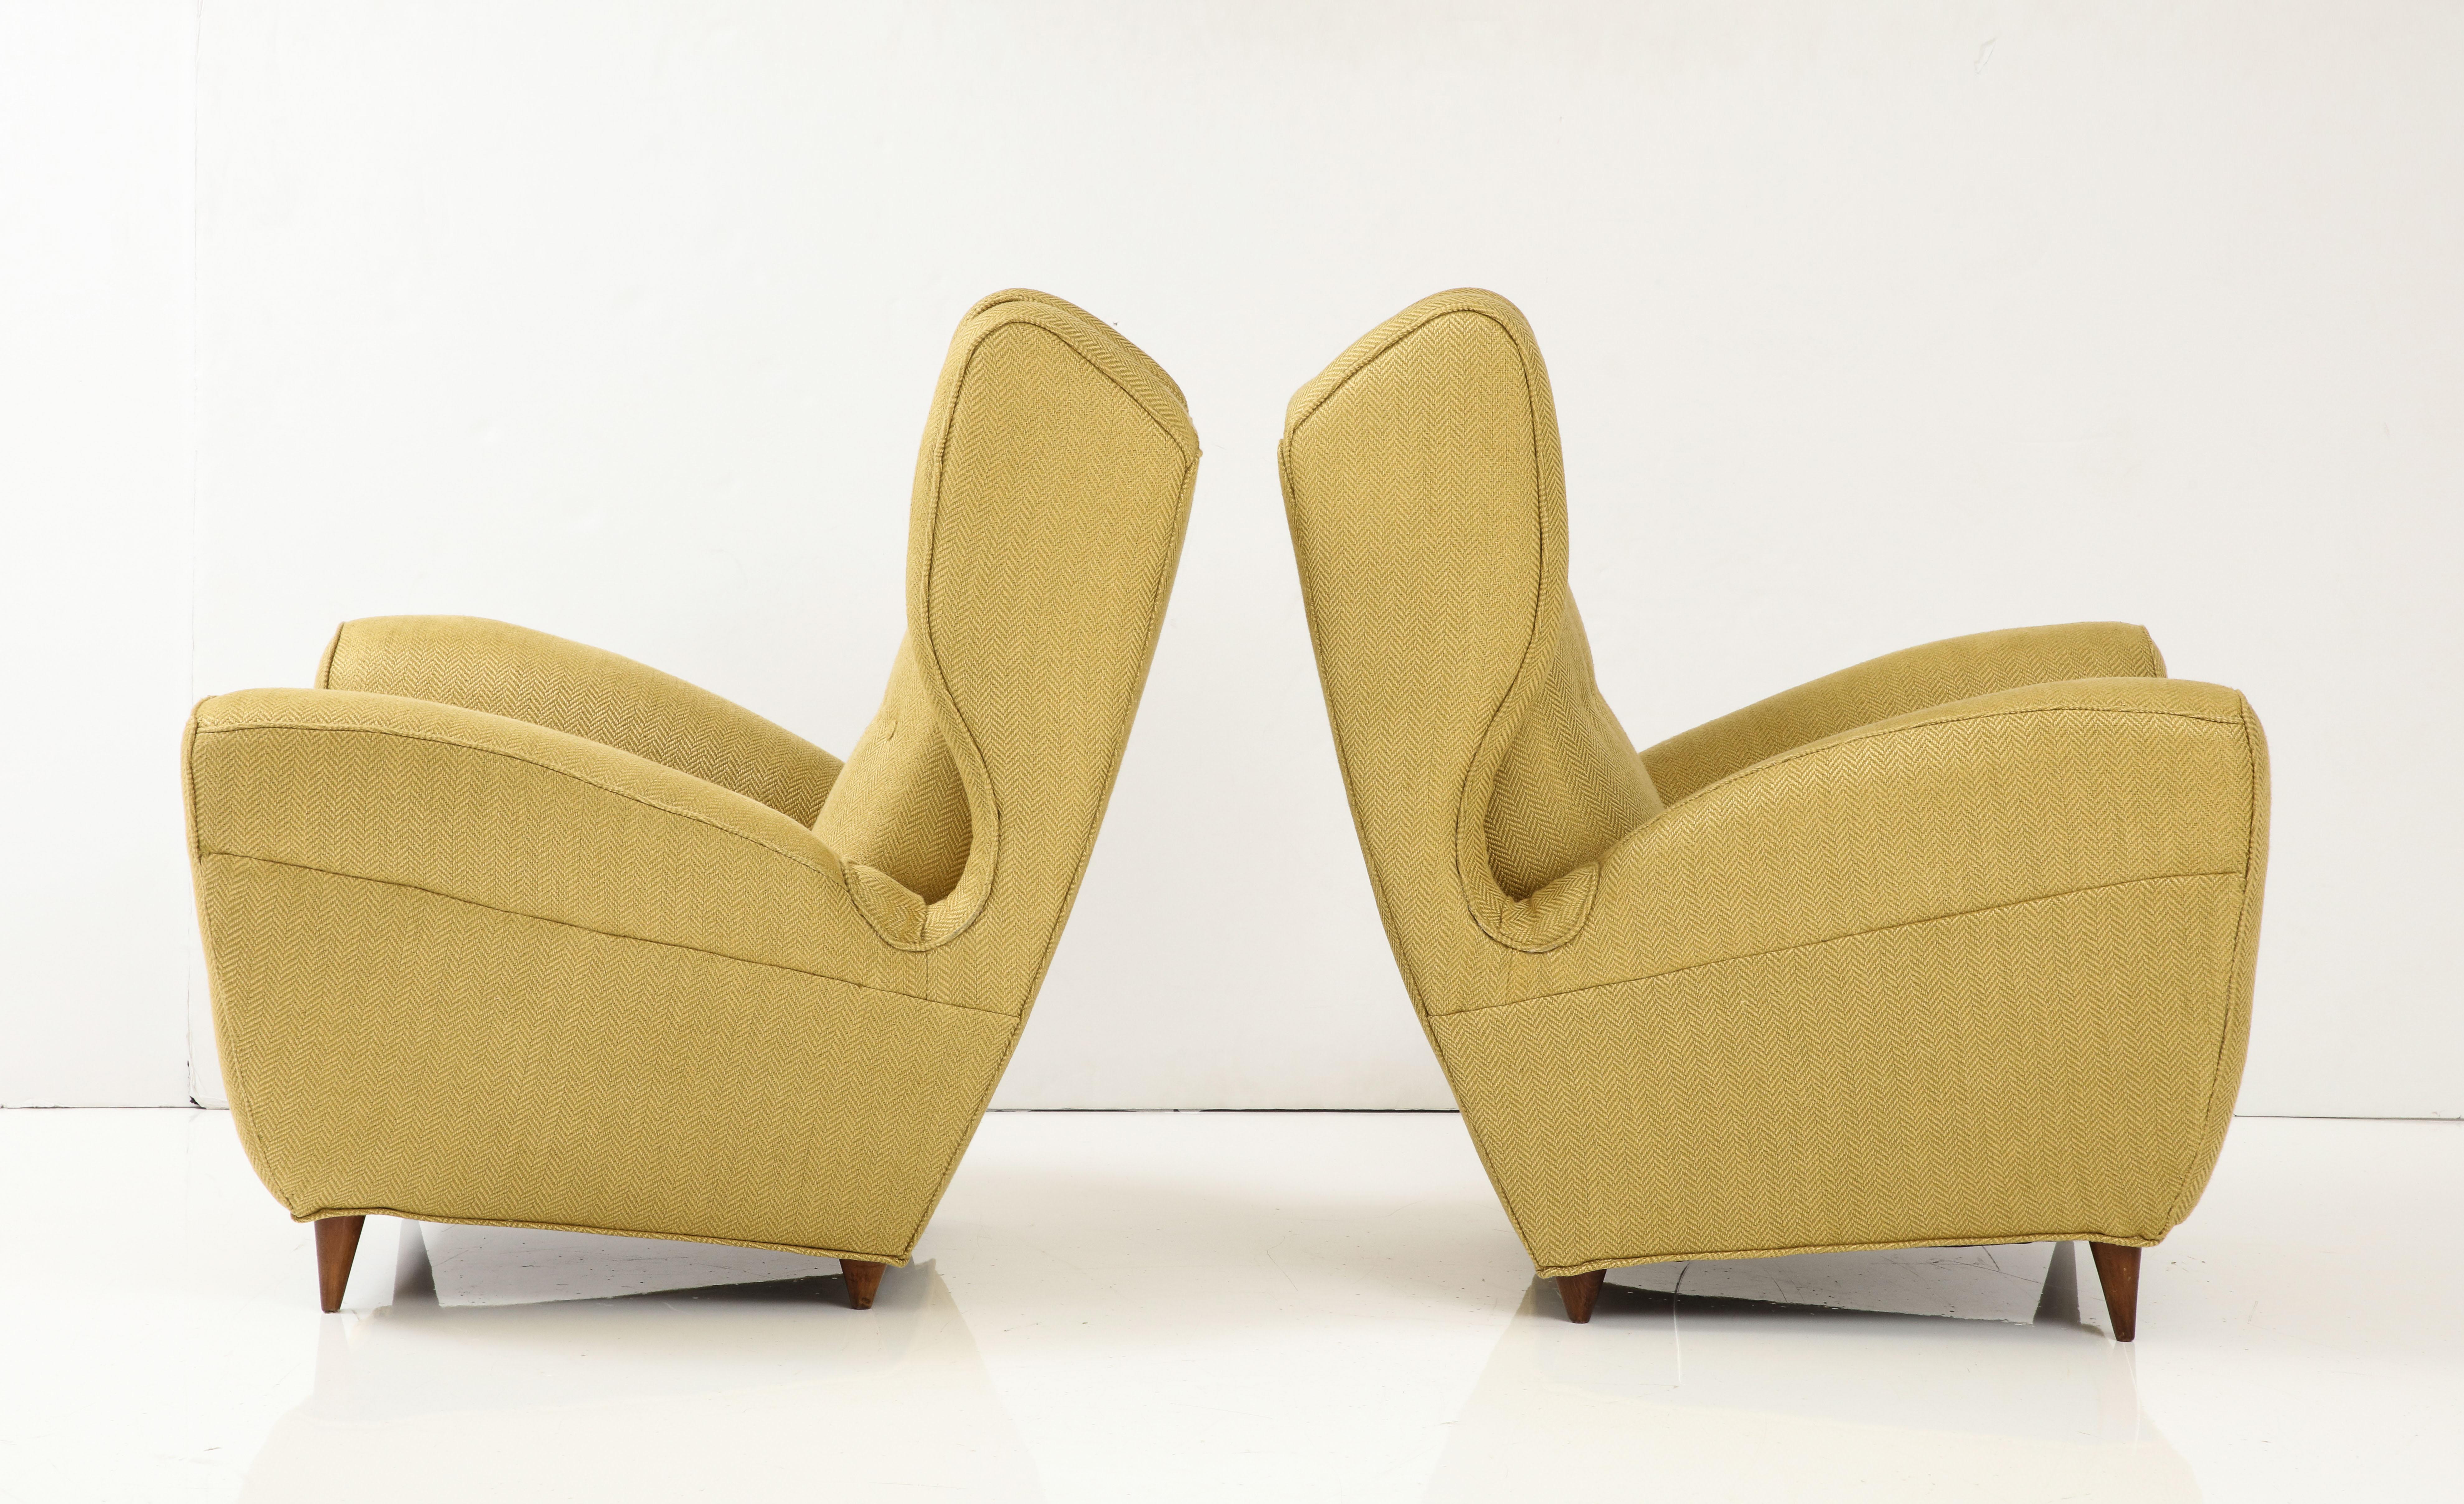 Erstaunliches Paar großer Sessel aus den 1950er Jahren, entworfen von Melchiorre BEGA, neu gepolstert mit Donghia-Stoff aus Leinenmischung, mit leichten alters- und gebrauchsbedingten Gebrauchsspuren und Patina.